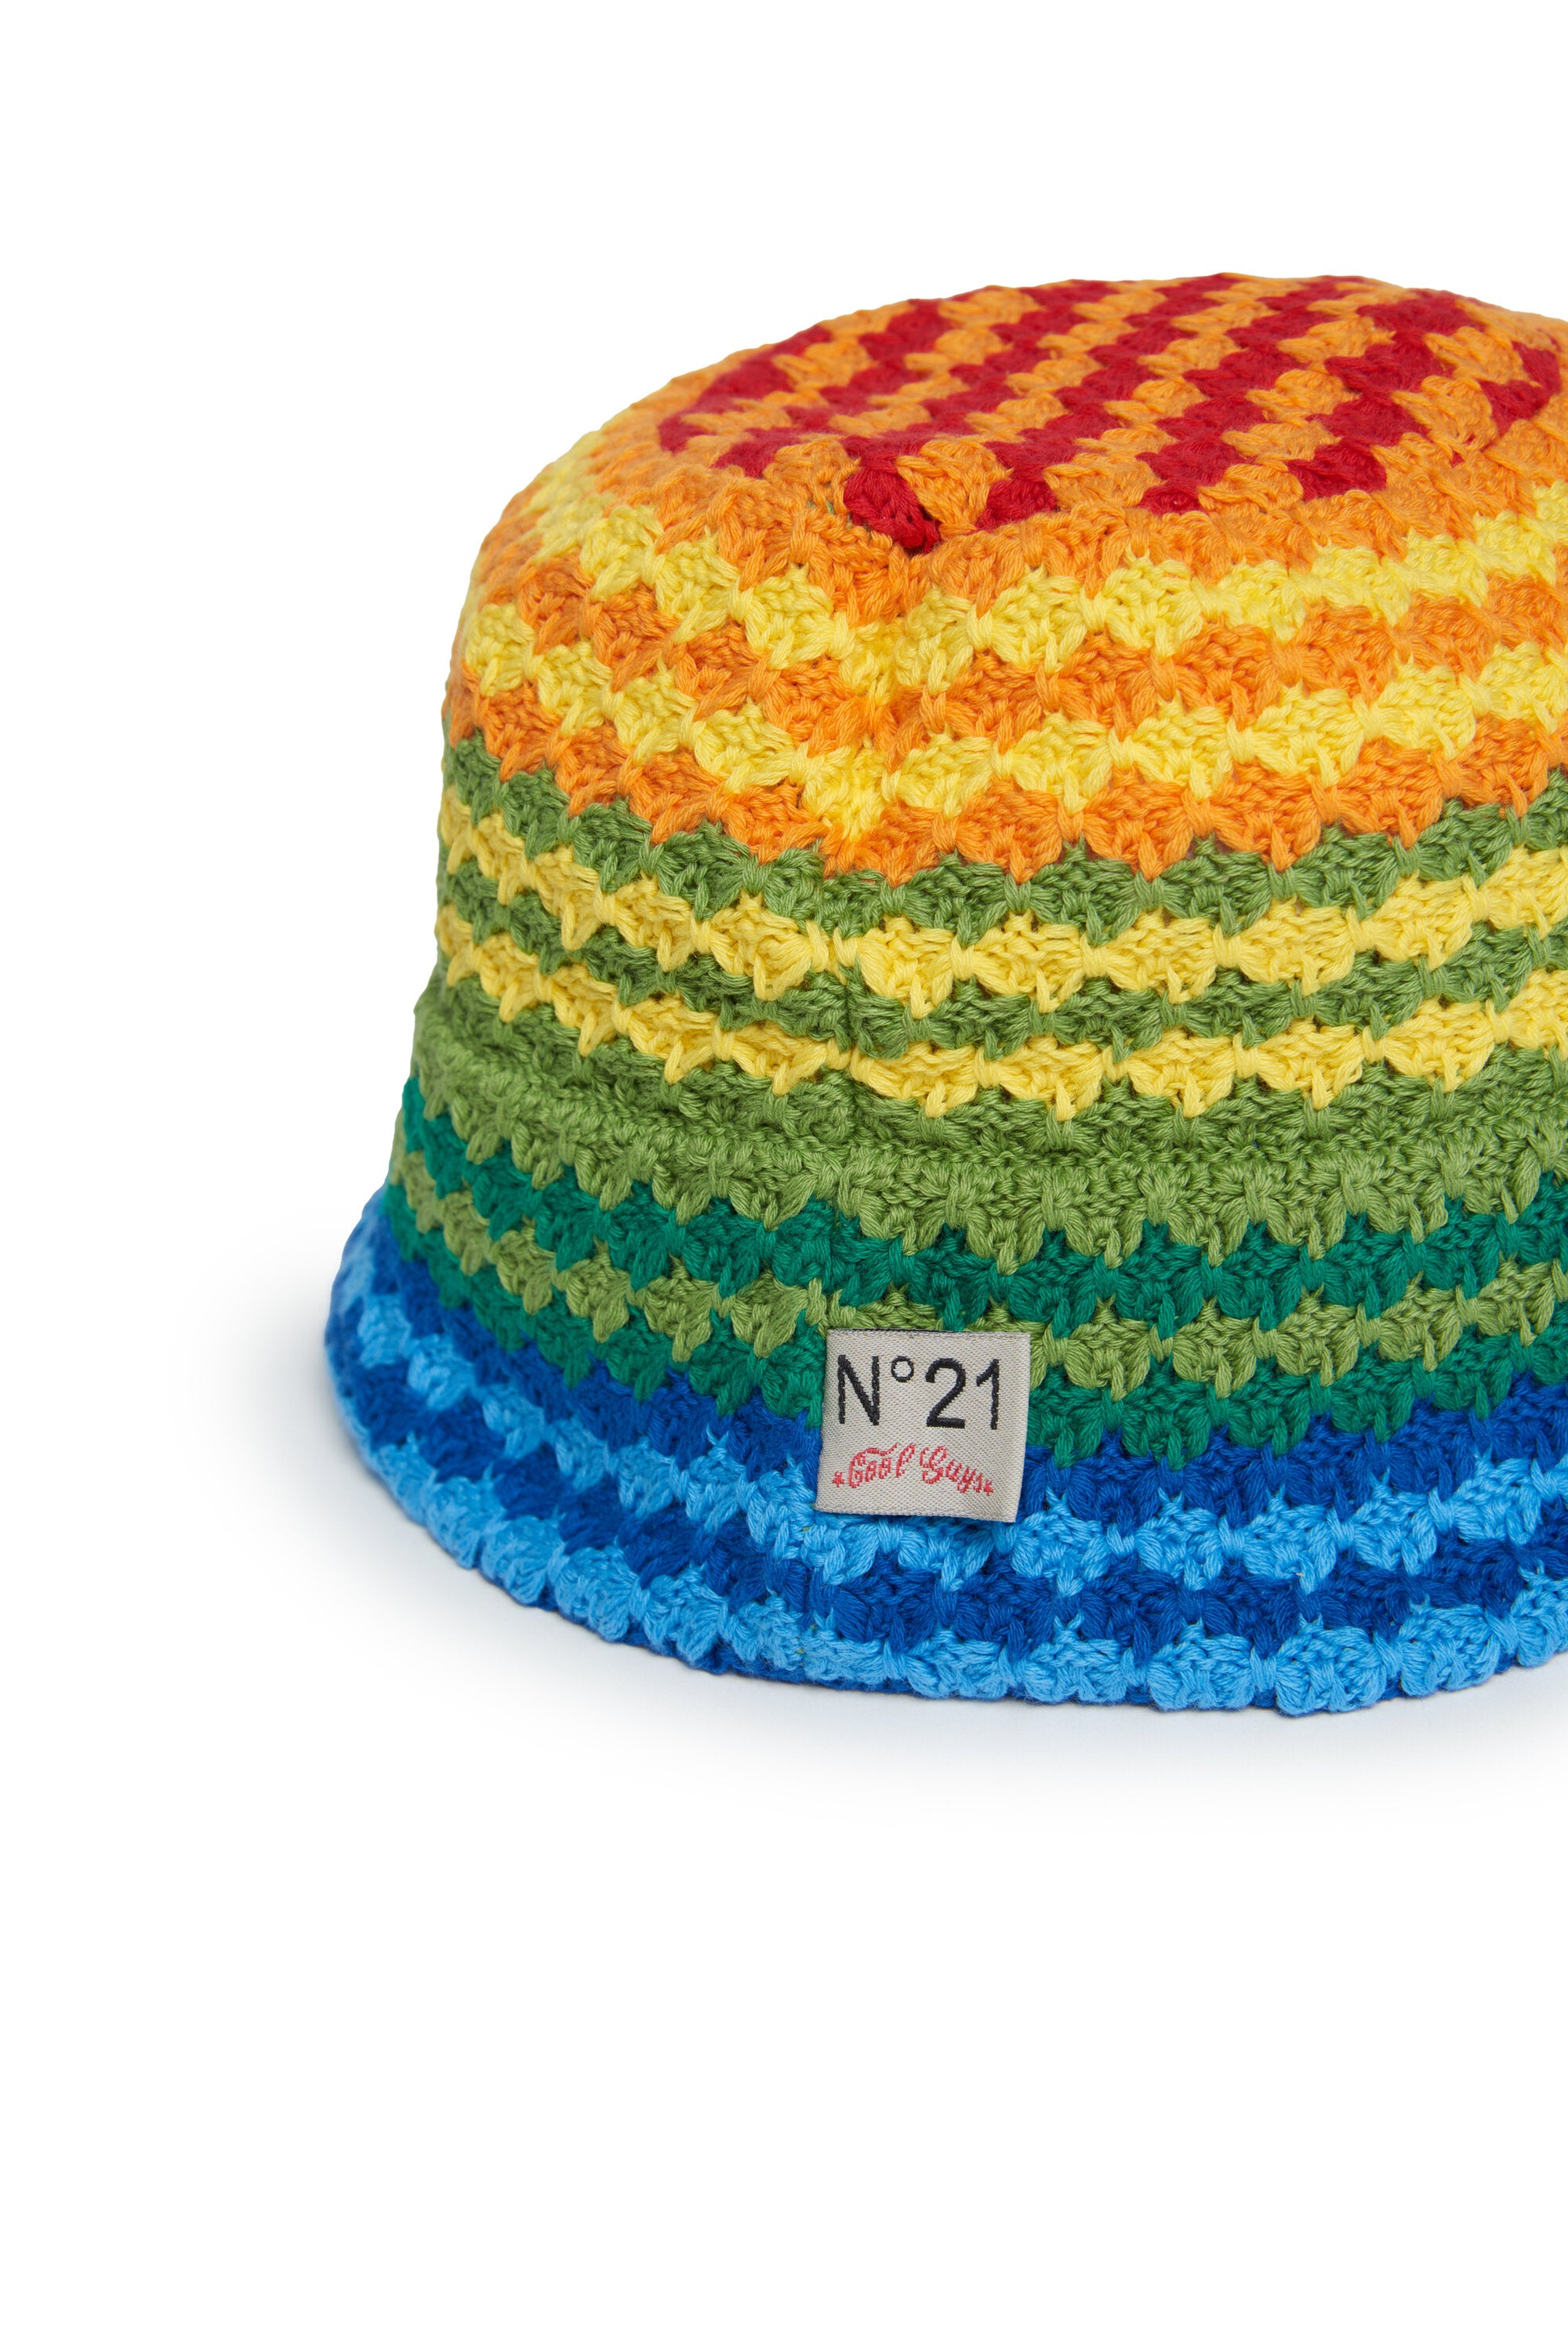 Gorro de punto crochet Rainbow